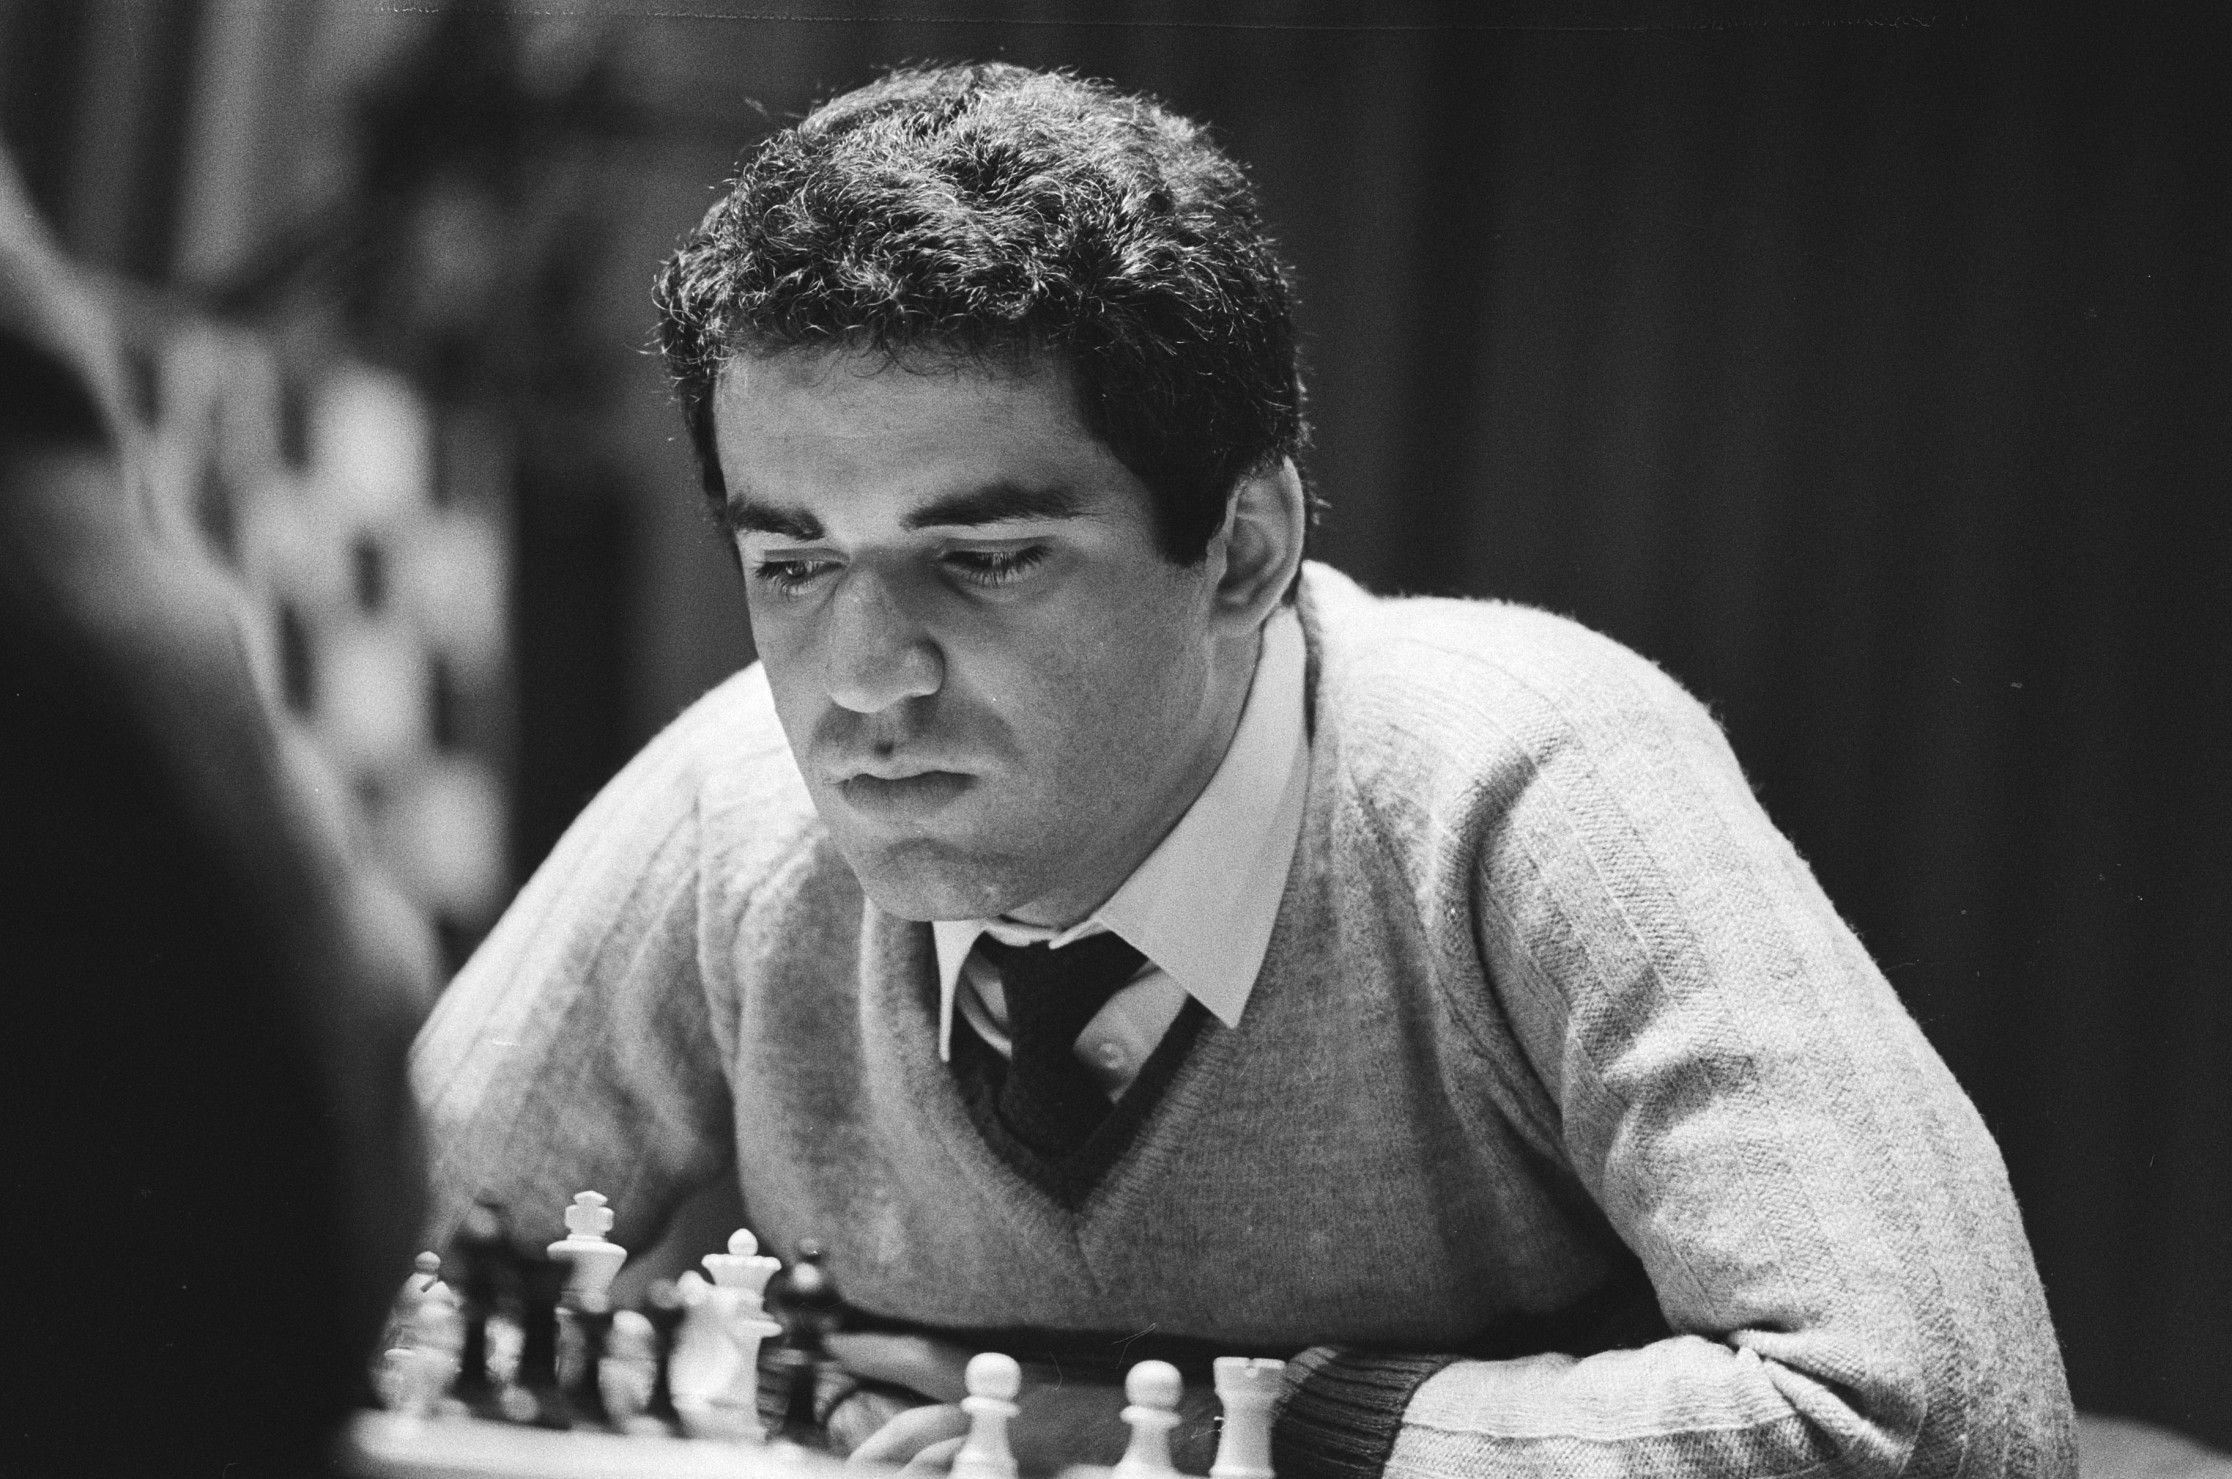 Abbildung 1: Garry Kasparov, 1985, Wikimedia